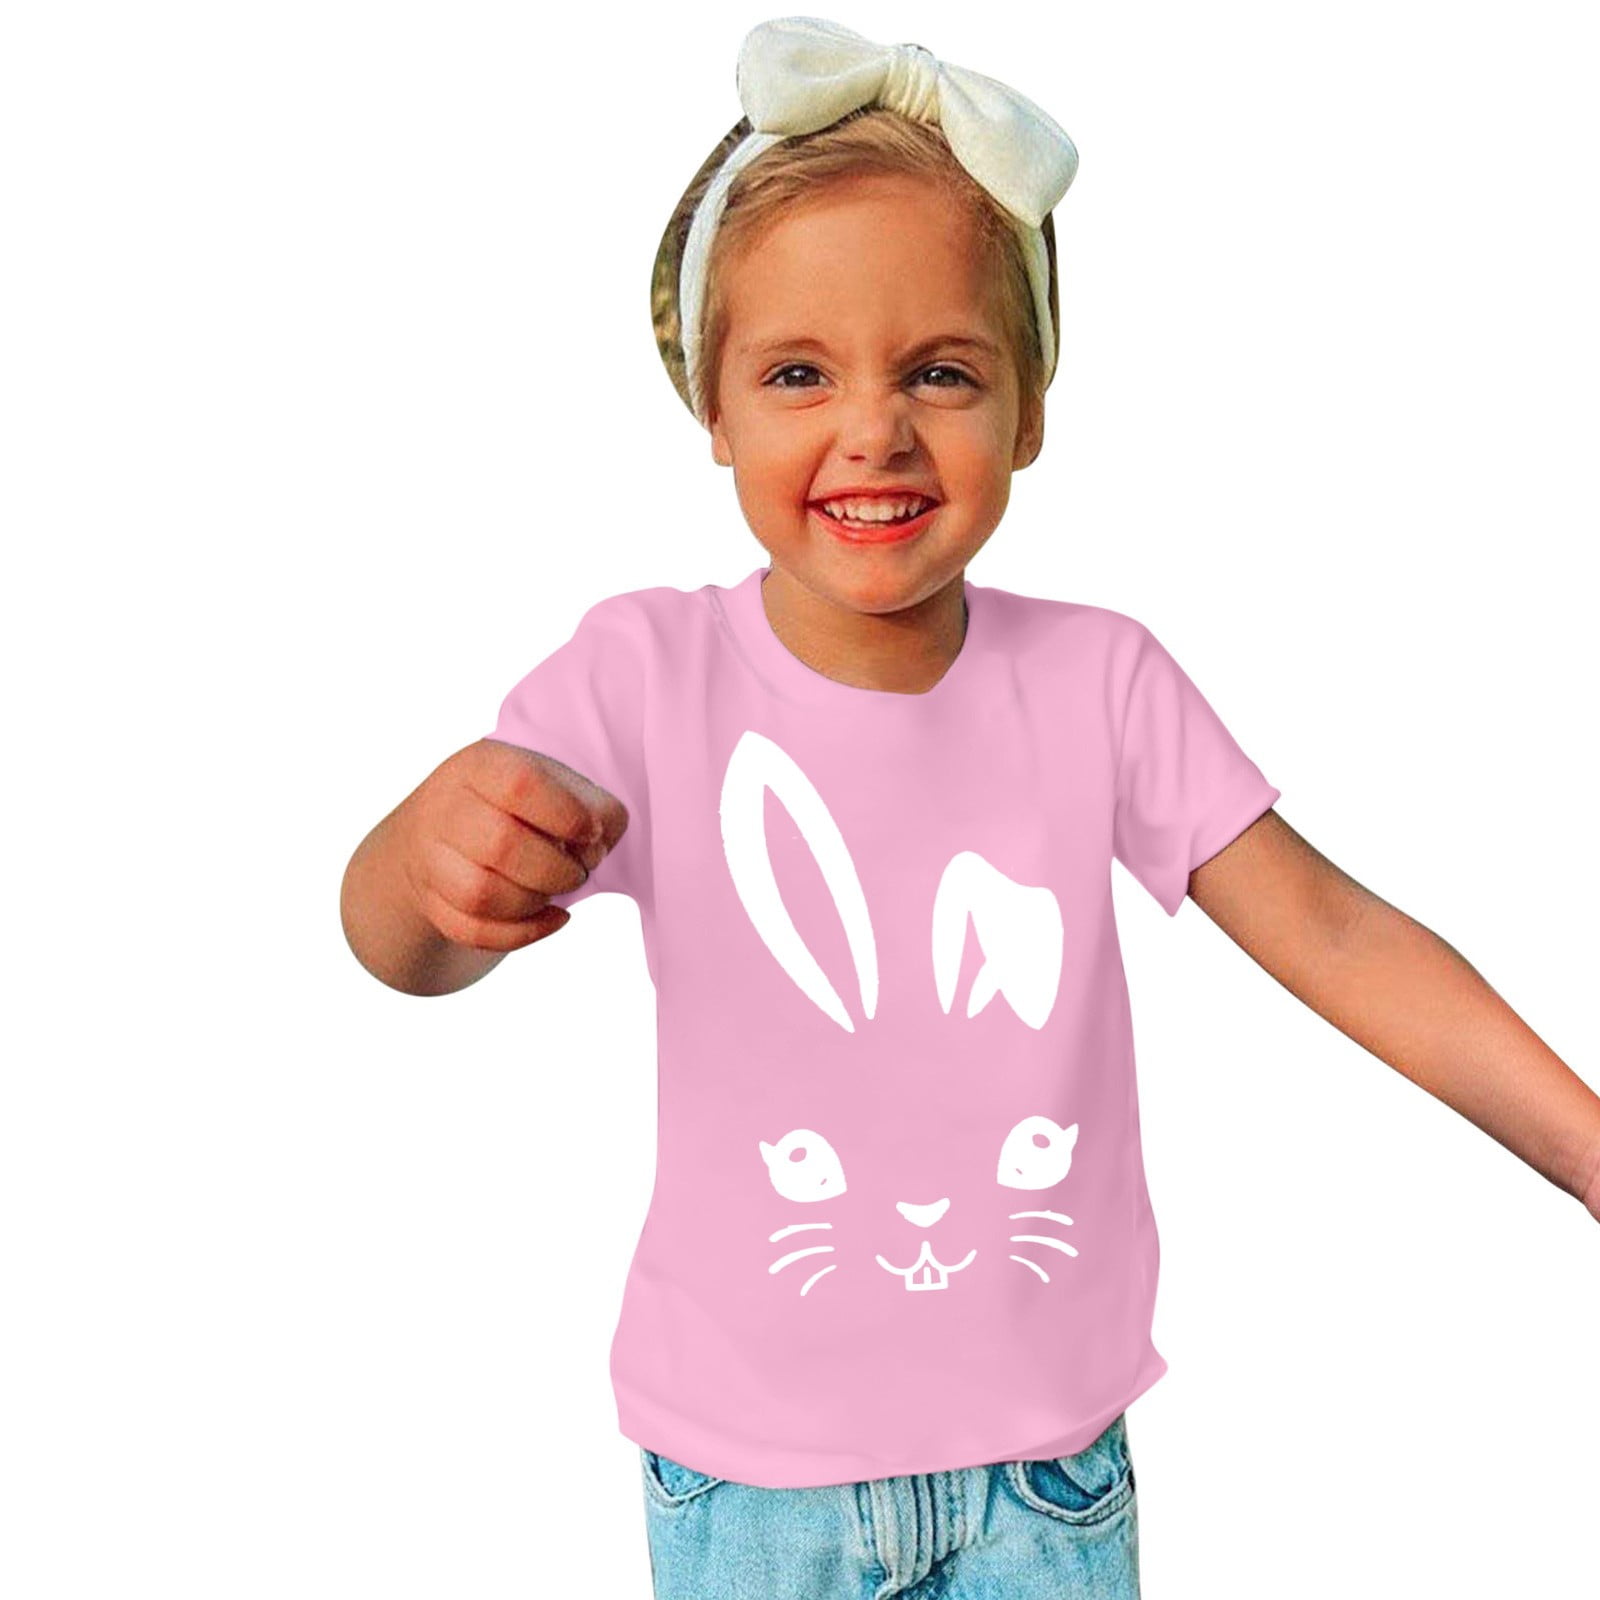 LONKITO Toddler Kids Boys Girls Easter T-Shirt Short Sleeve Crew Neck ...